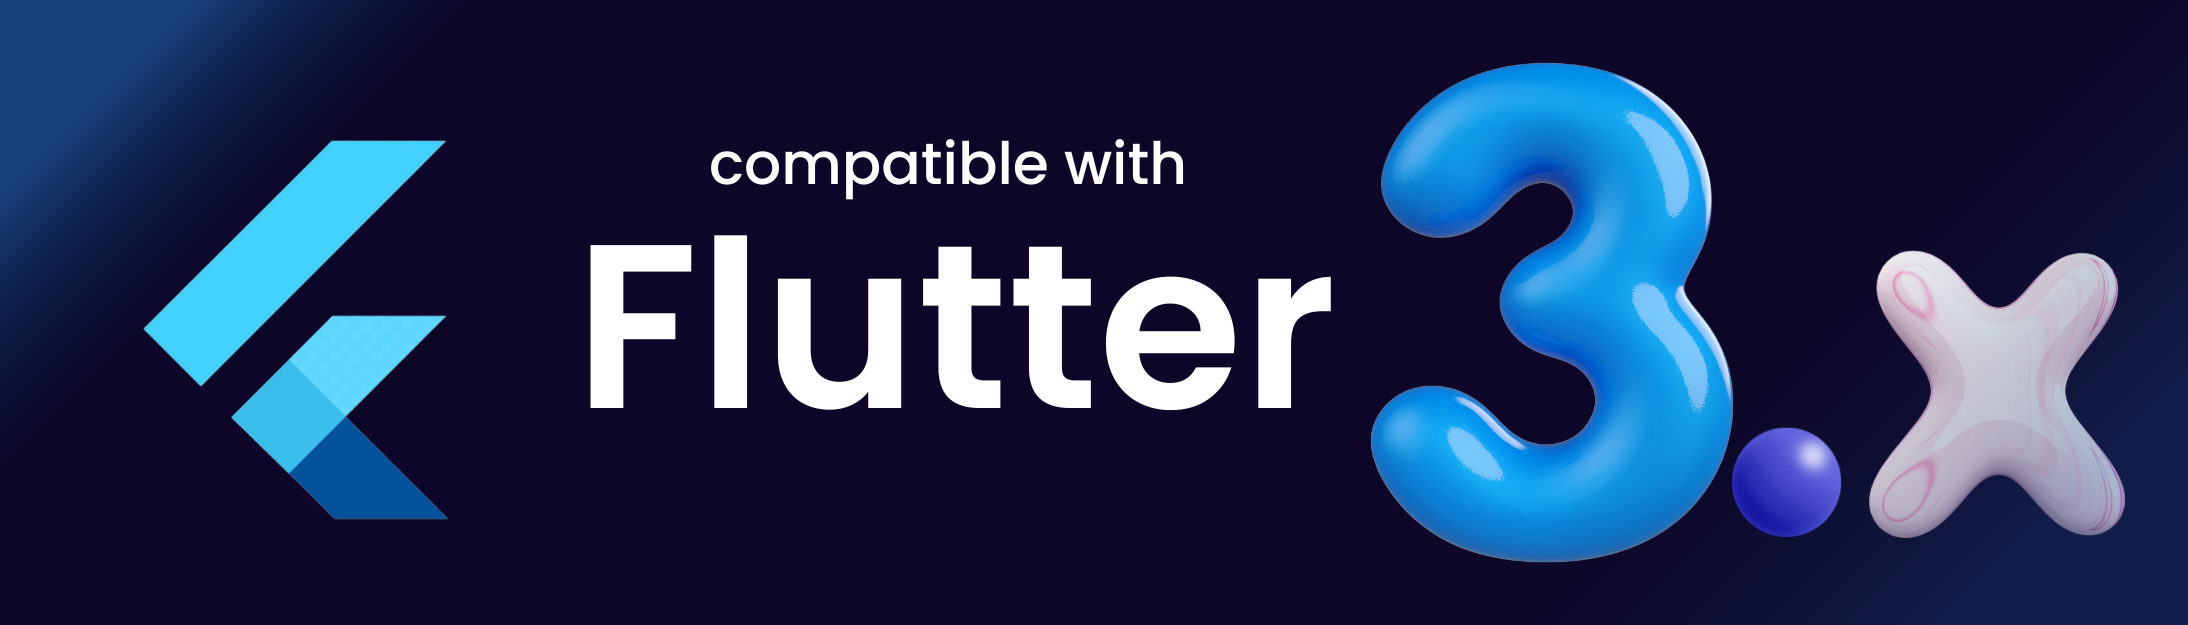 BUNDLEI - 10 Flutter App UI Template (Figma Included) - 1